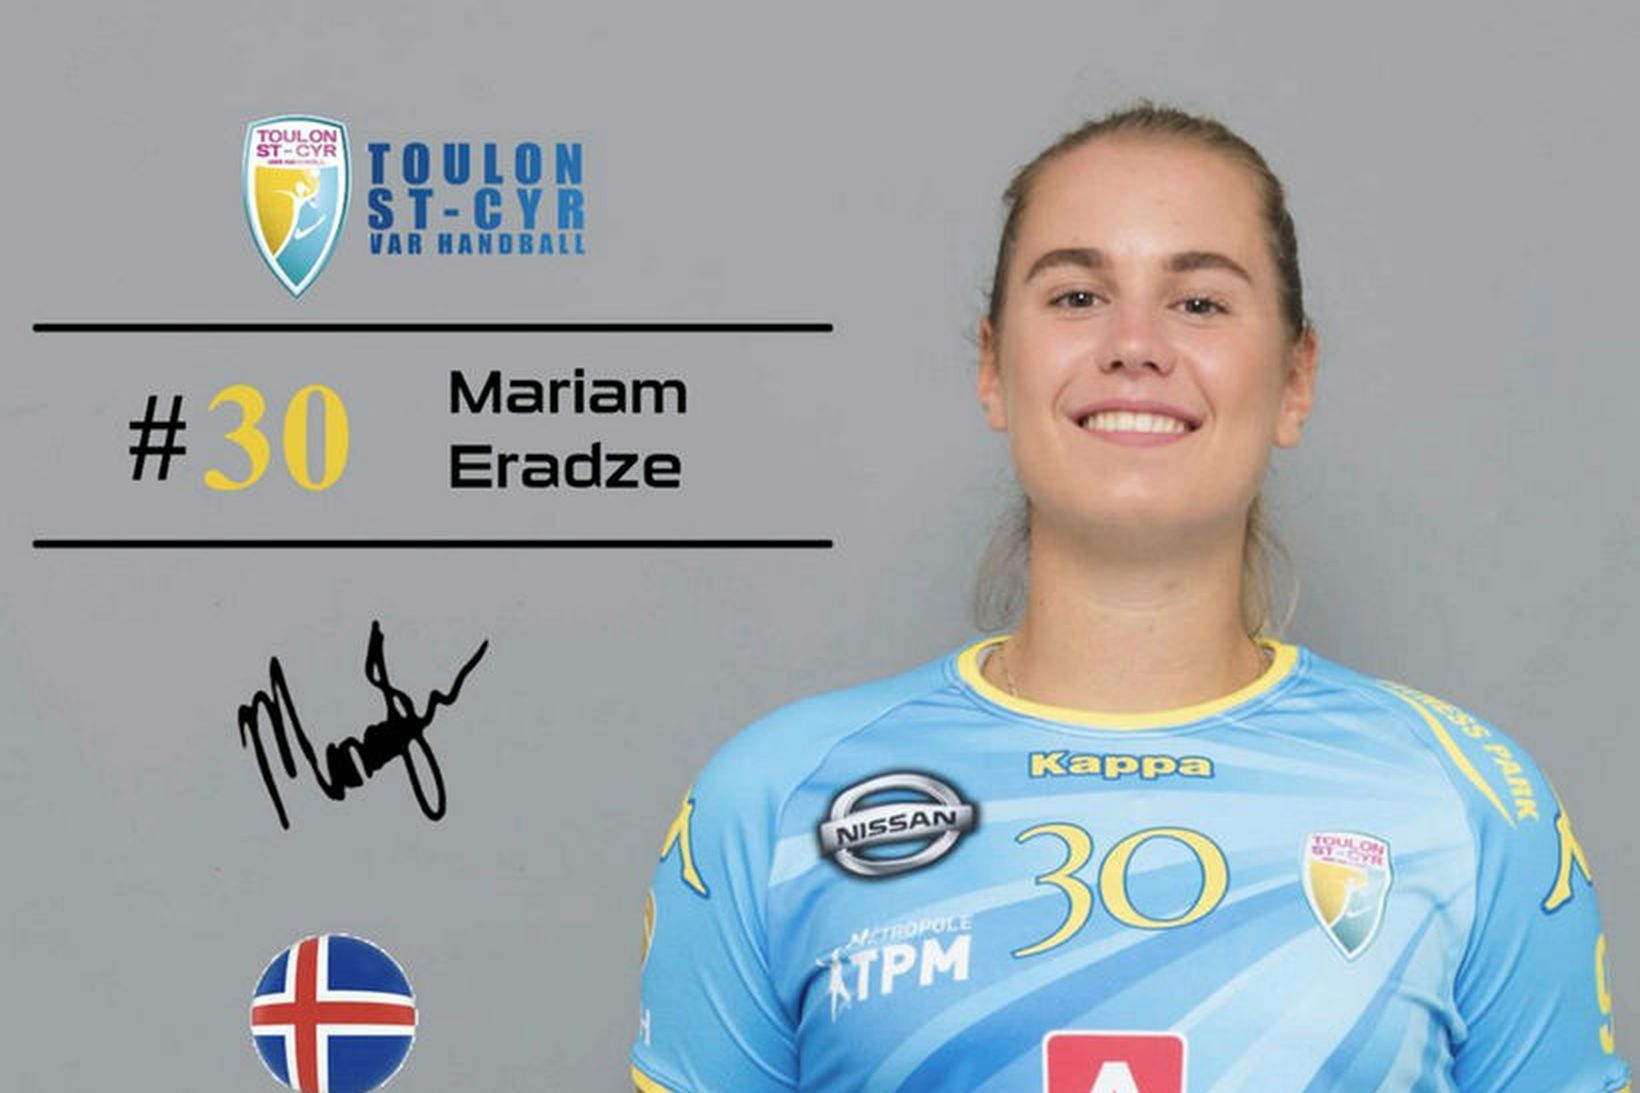 Mariam Eradze, eins og hún er kynnt á vef Toulon.